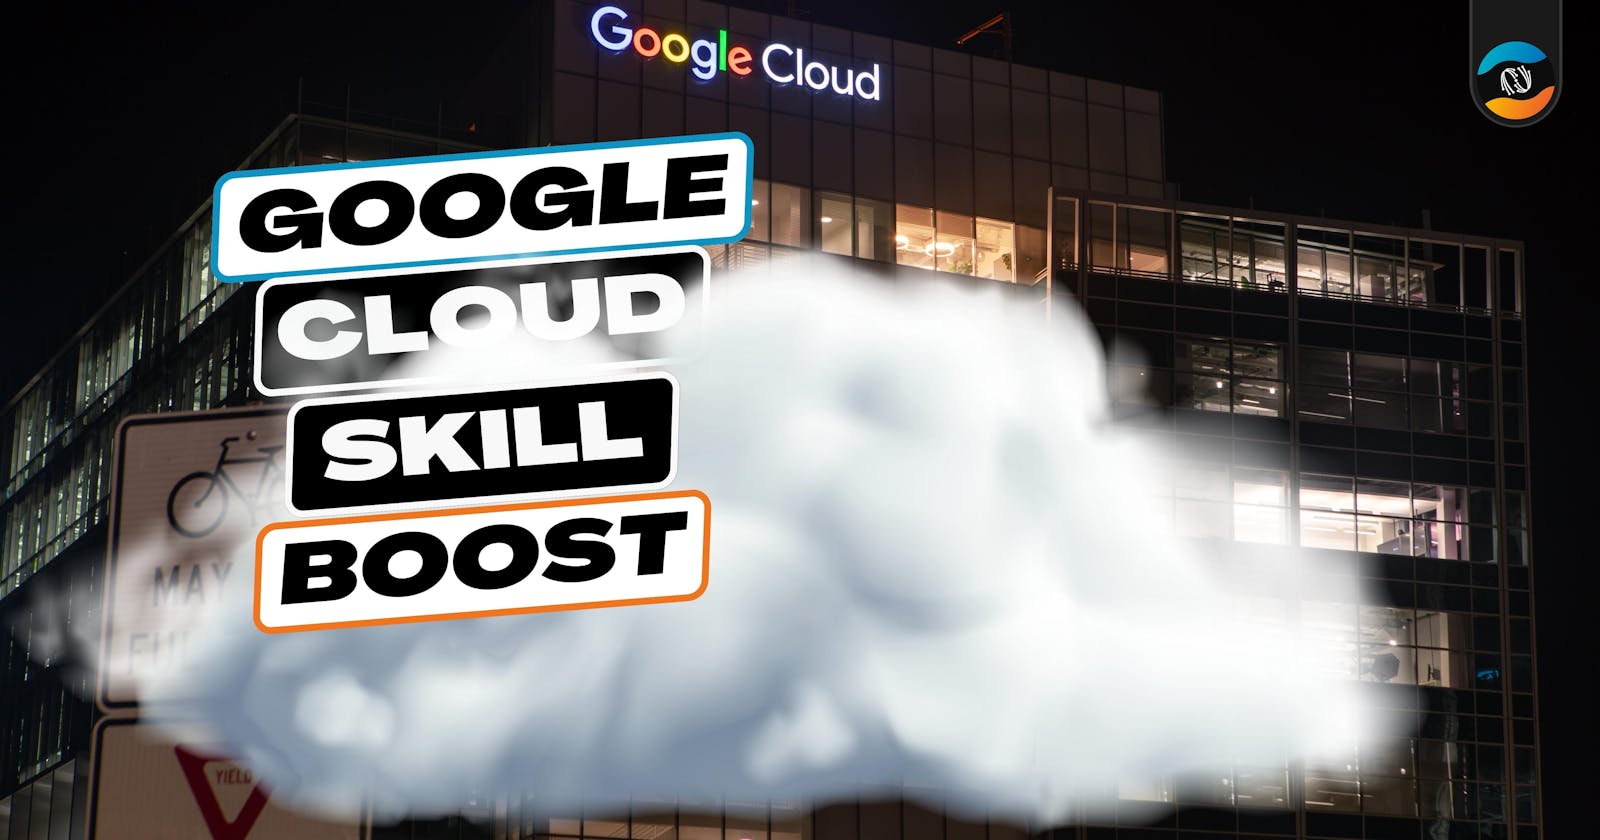 Google Cloud Skill Boost